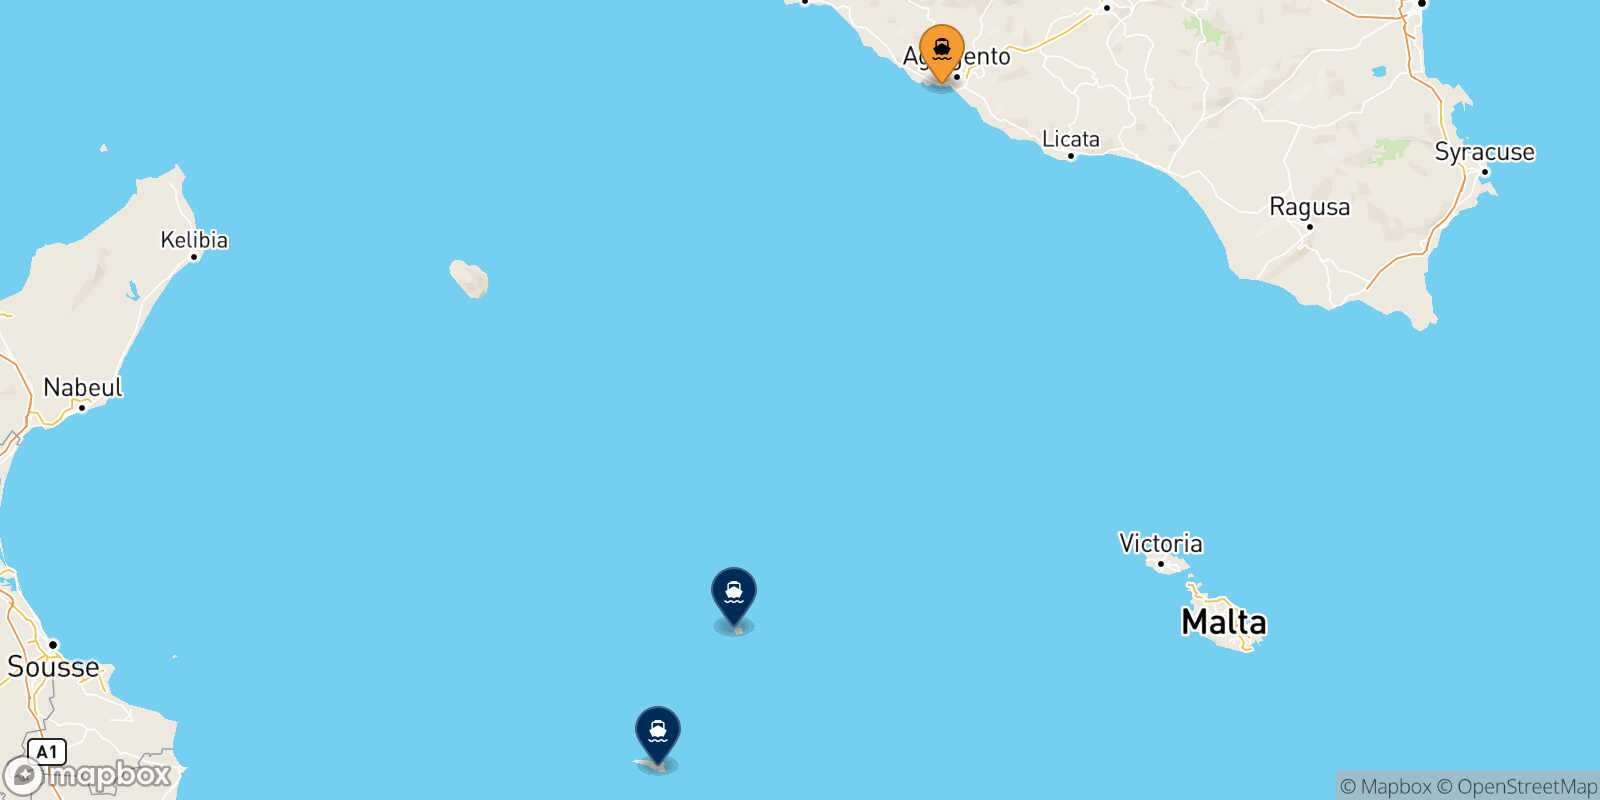 Mappa delle destinazioni raggiungibili da Porto Empedocle